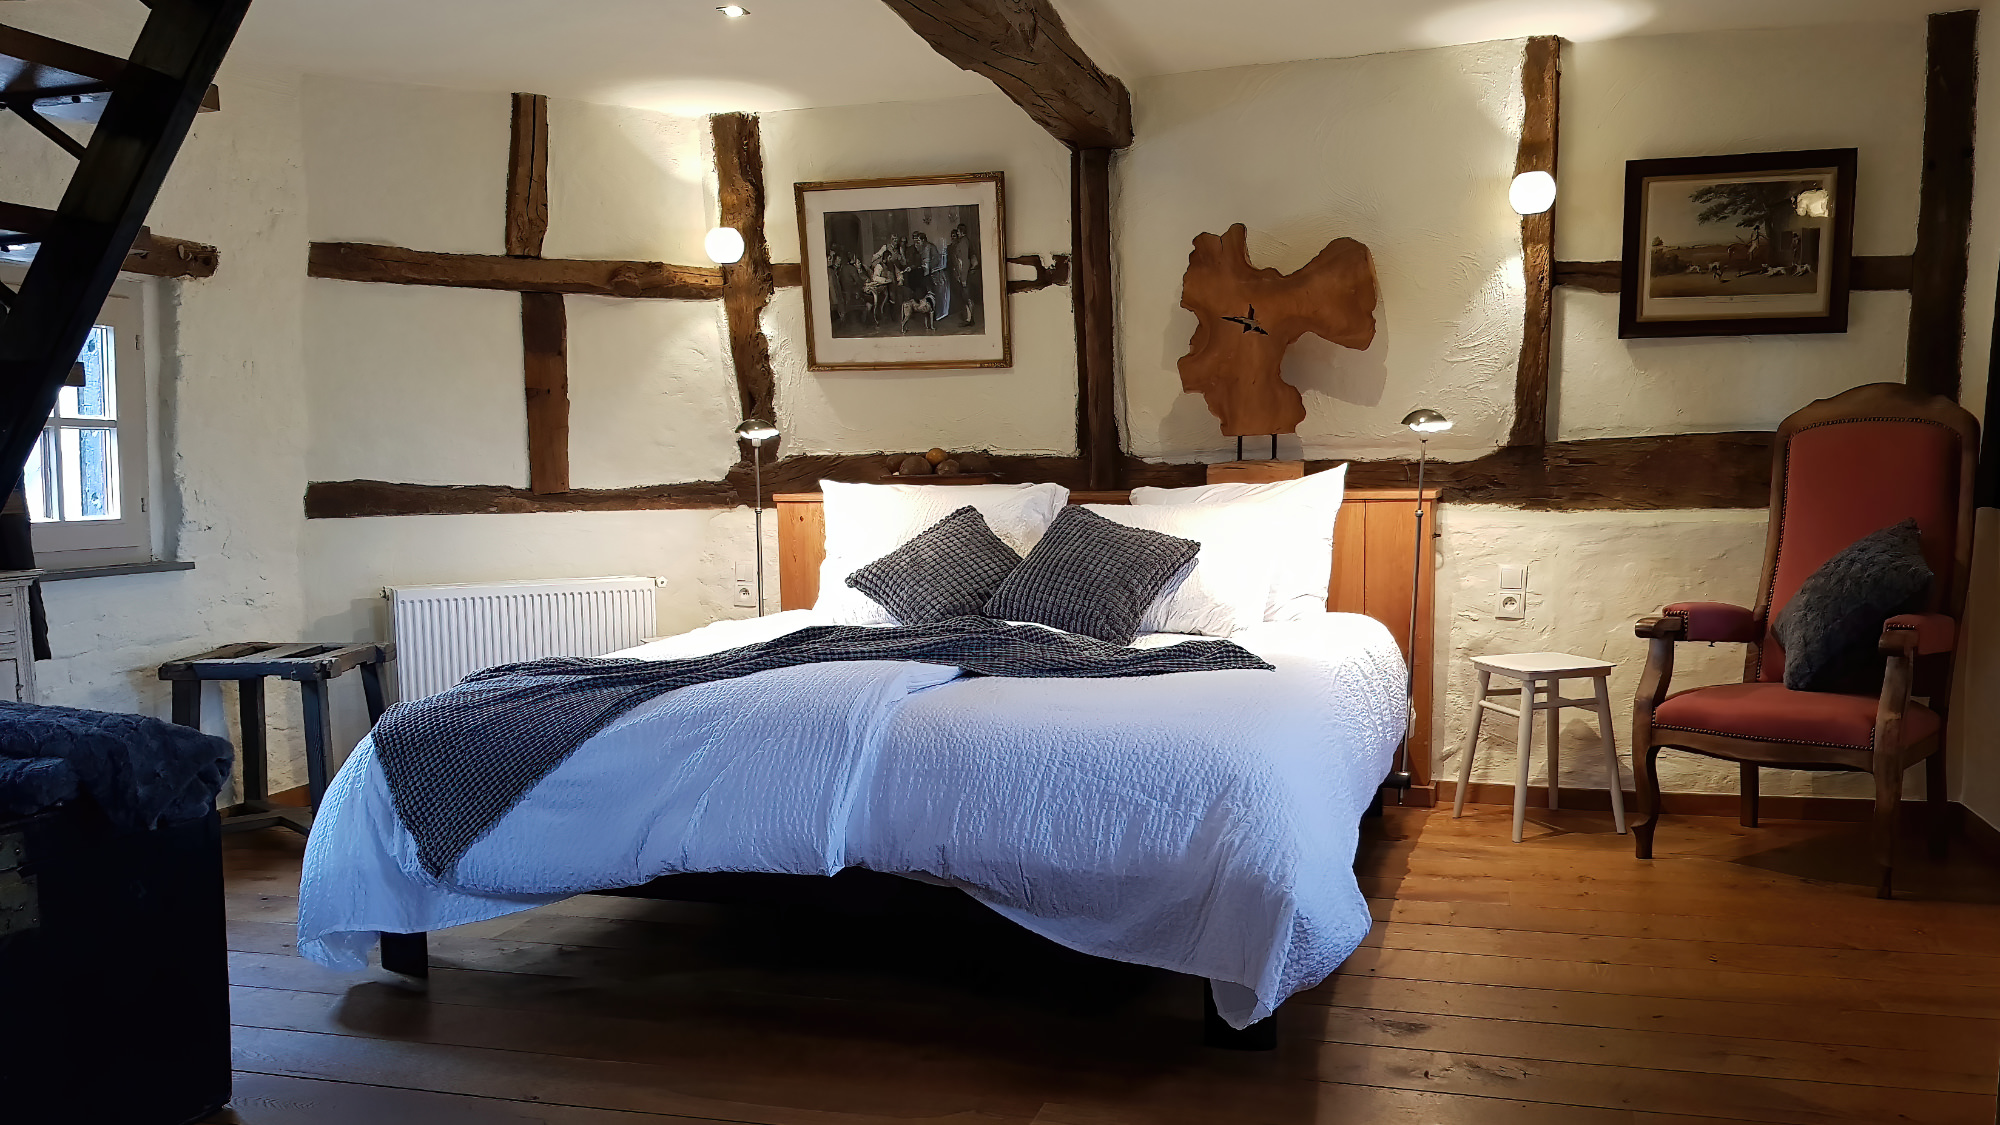 Luxe slaapkamer met balken constructie in oude boerderij.